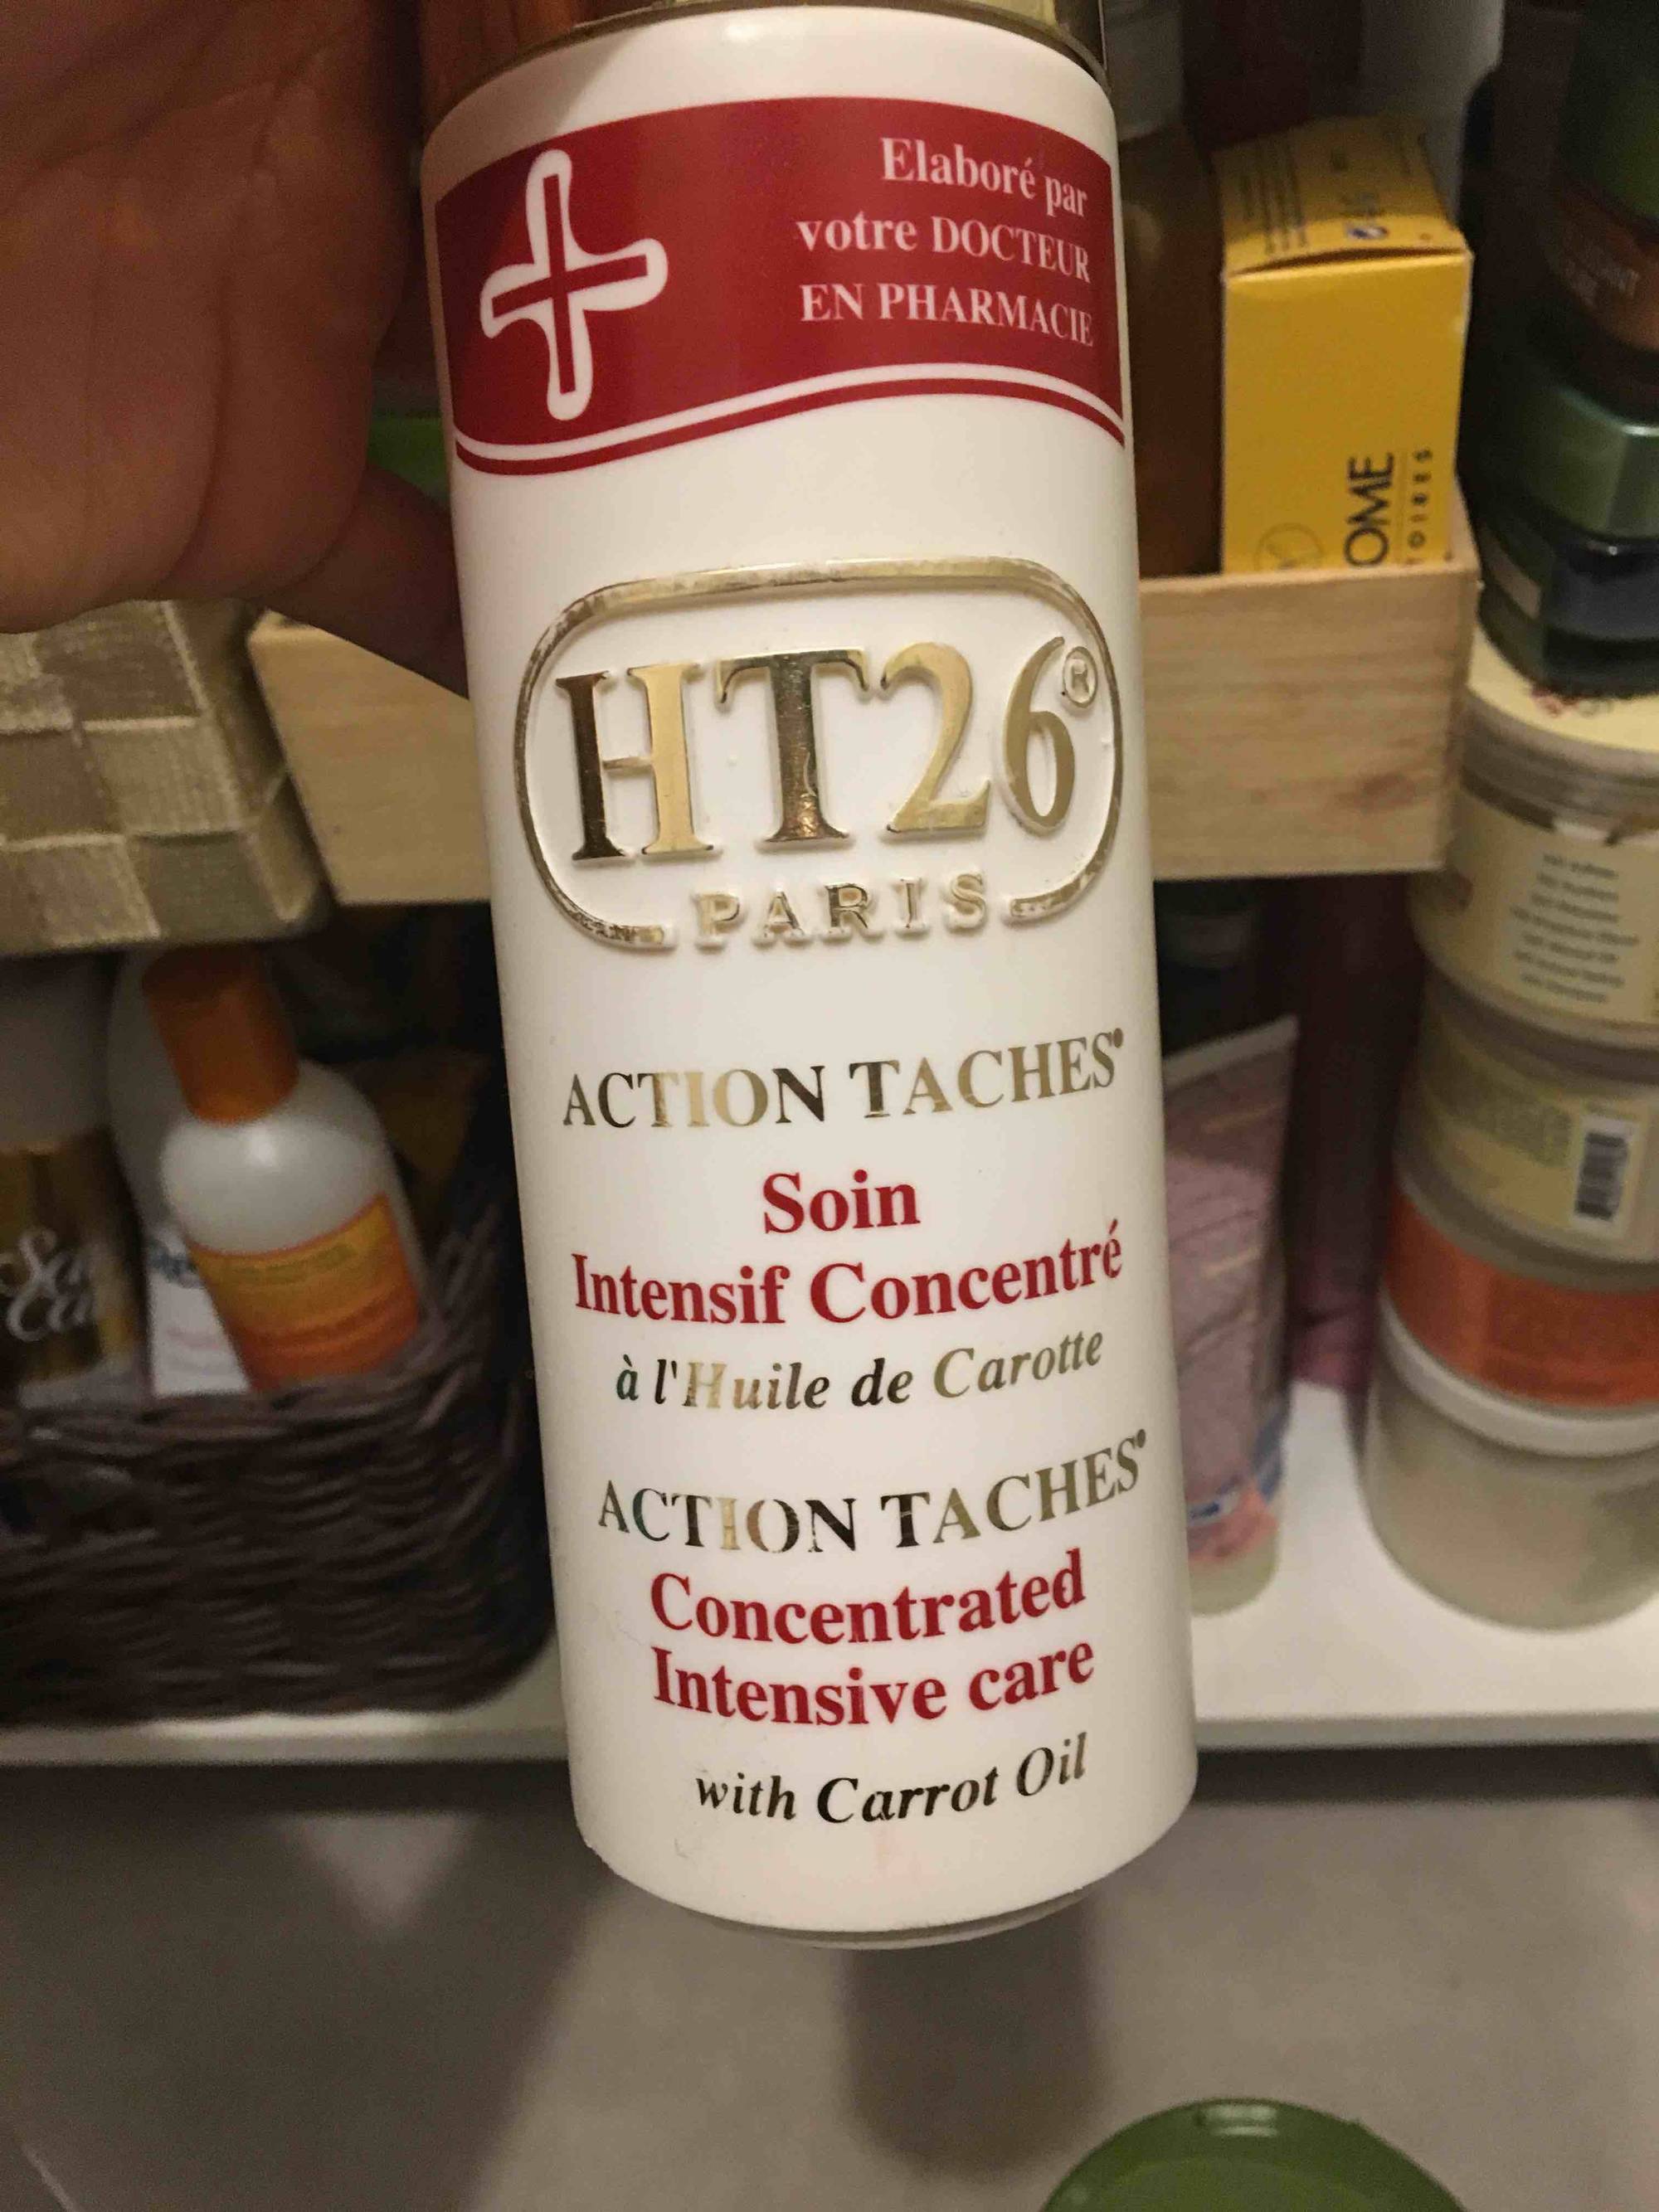 HT26 - Action taches - Soin intensif concentré